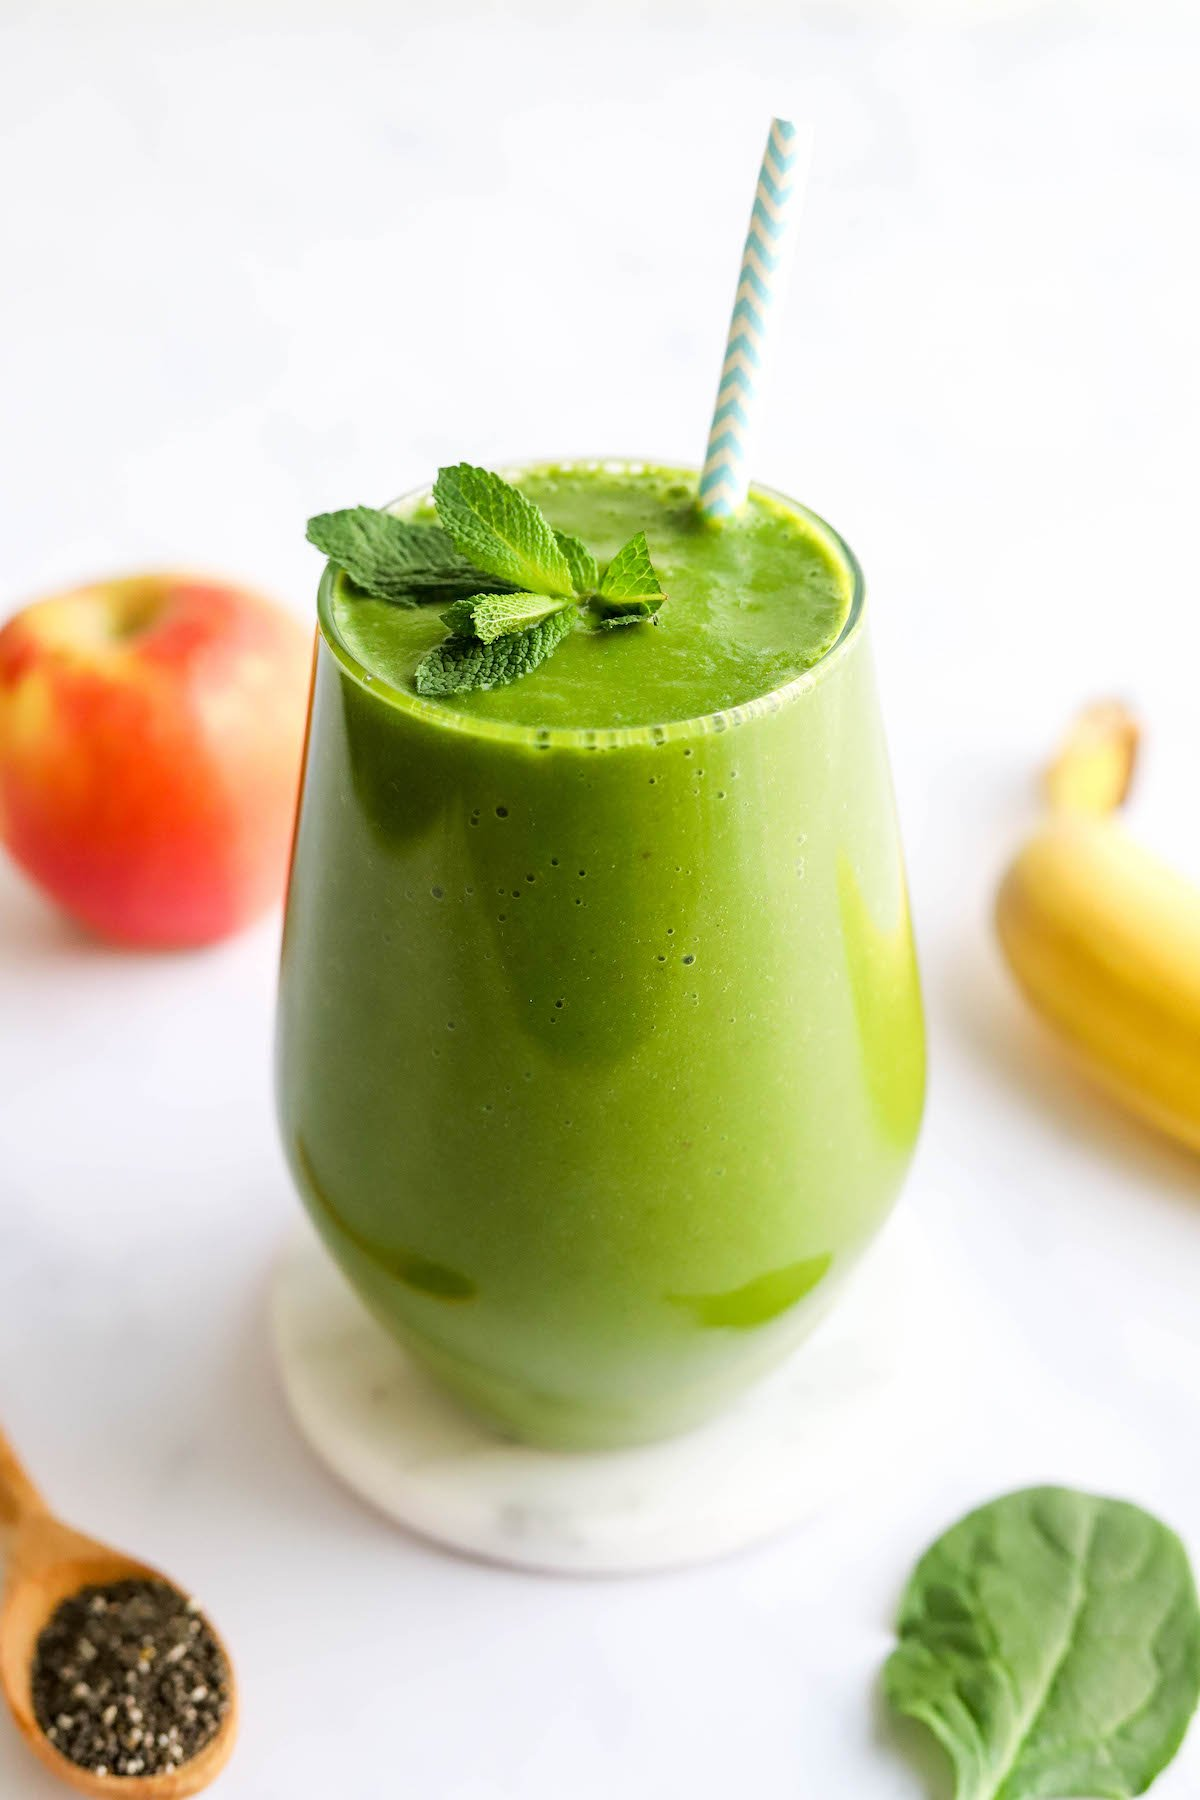 Um copo contendo smoothie verde de desintoxicação coberto com um raminho de menta fresca e uma palha listrada.